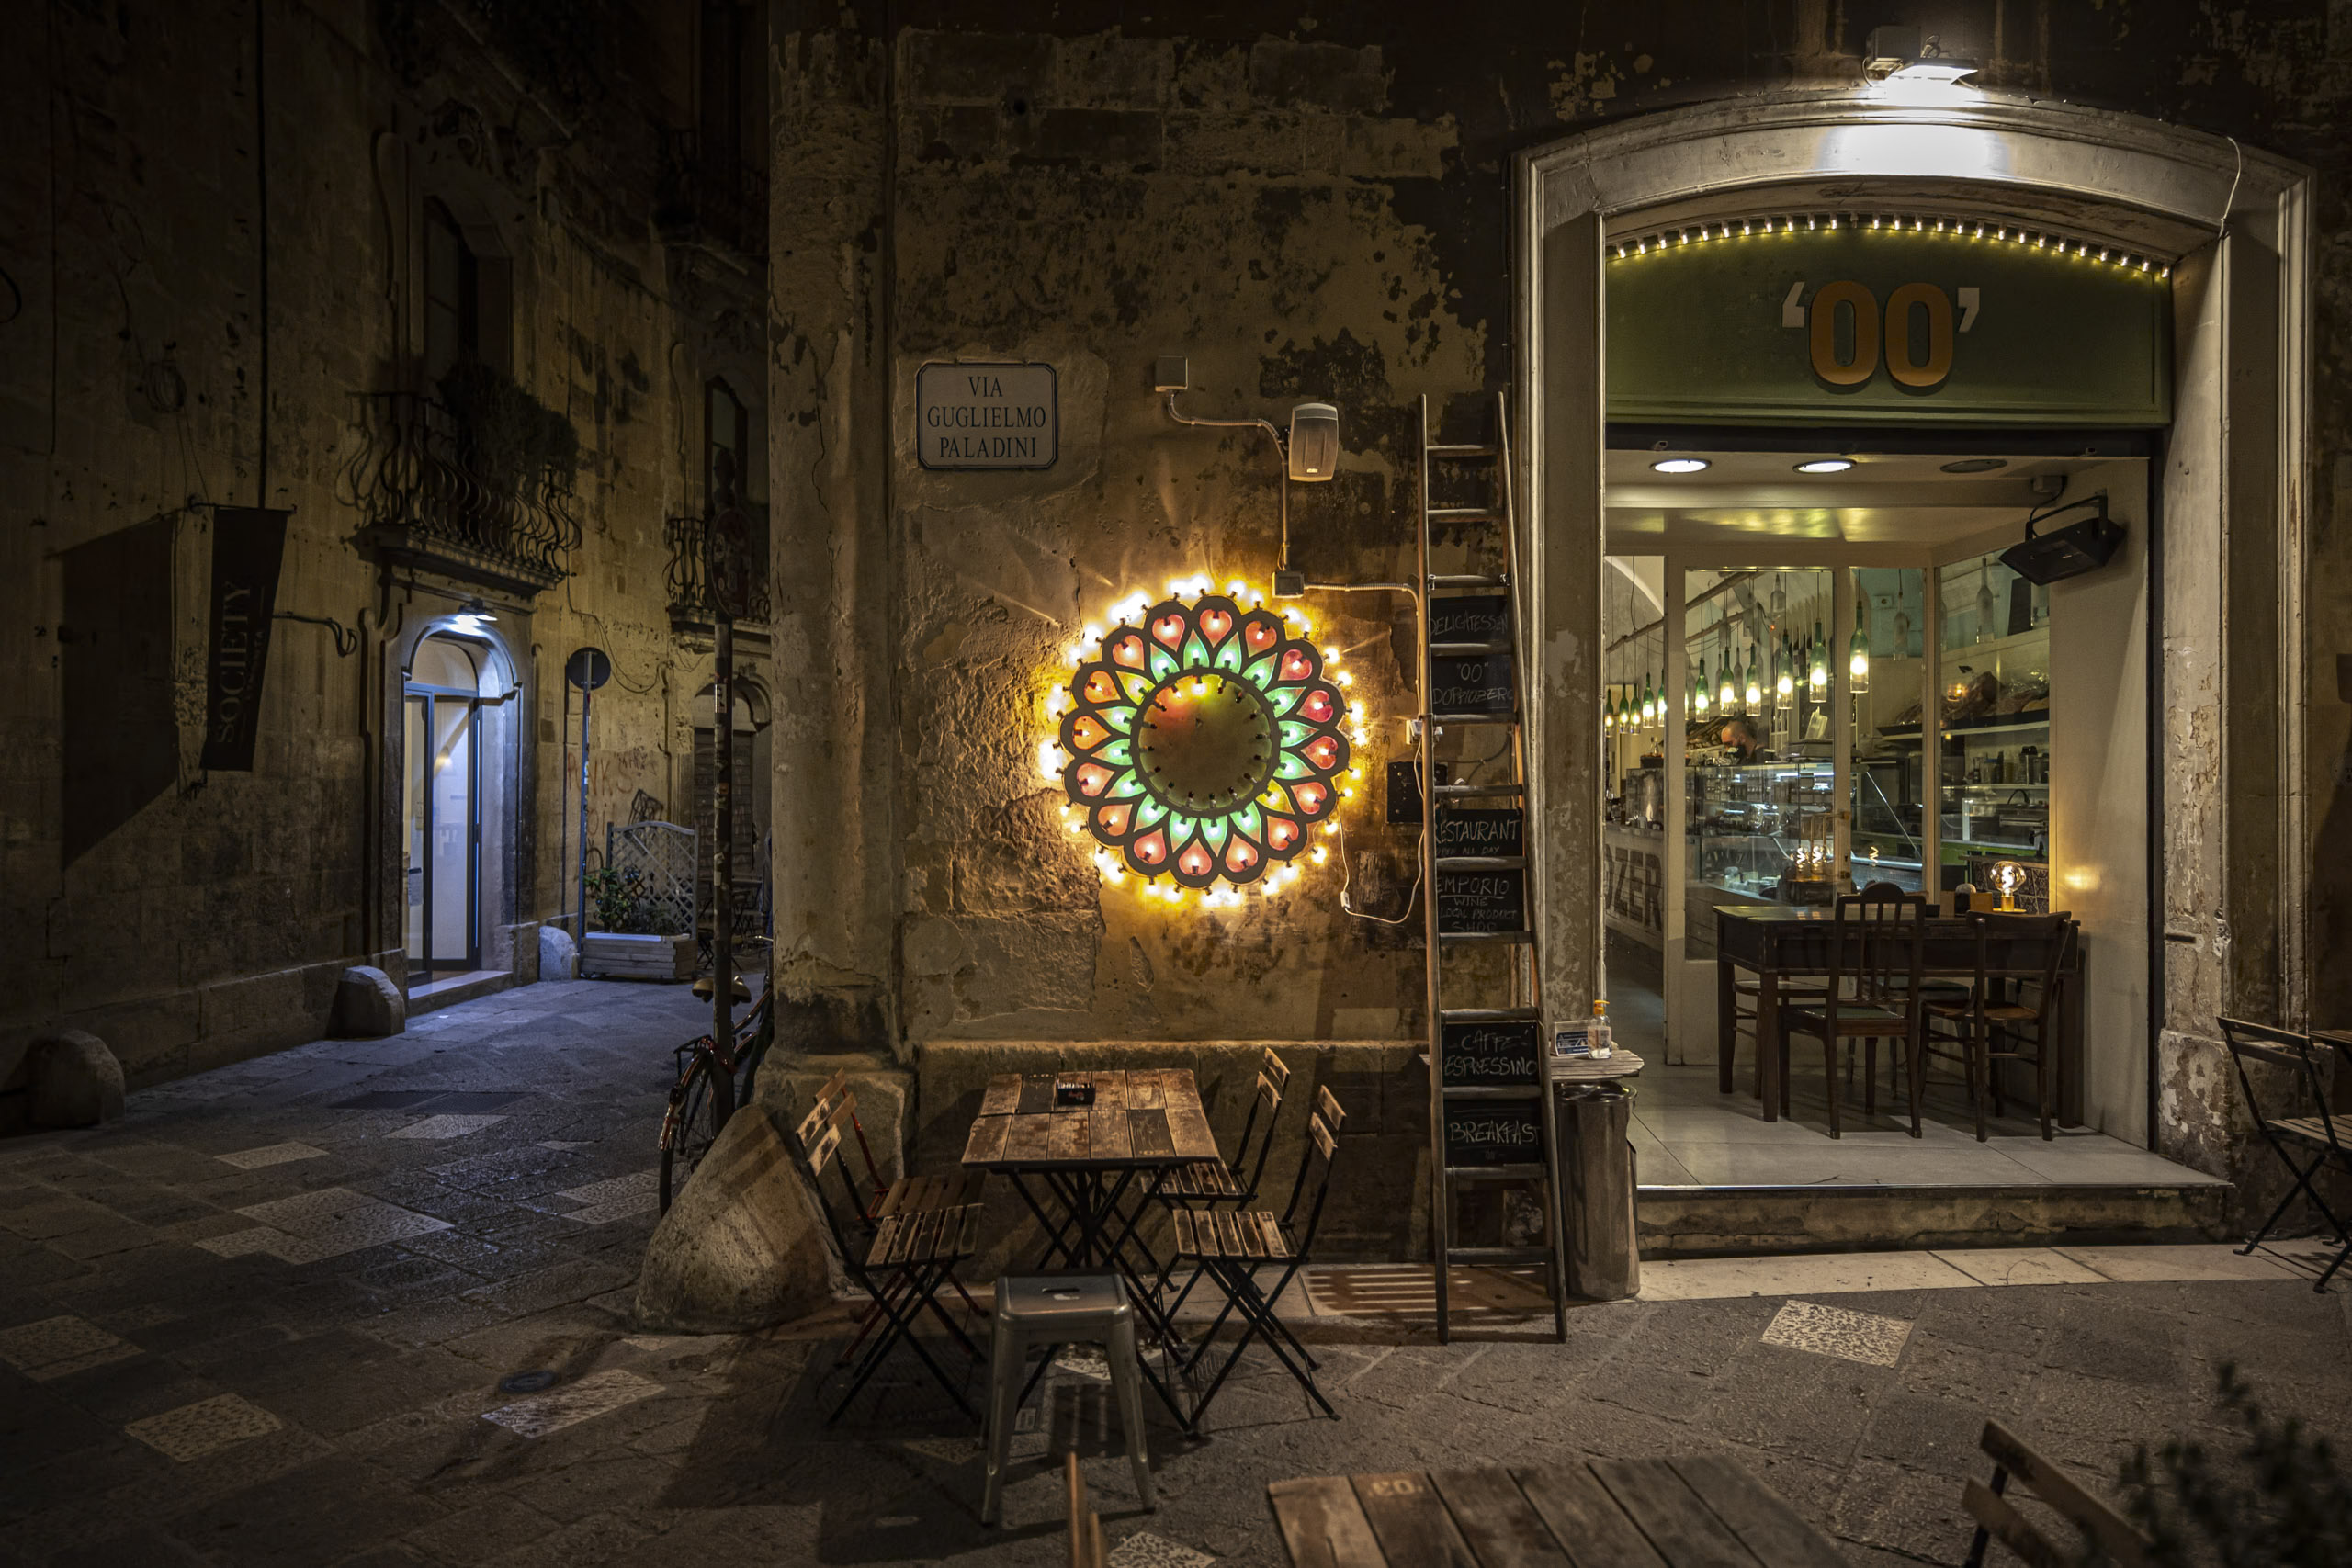 Ein charmantes Café bei Nacht in einer alten Kopfsteinpflastergasse, dekoriert mit einer lebendigen runden Lichtskulptur, einladenden Holztischen im Freien und warmer Innenbeleuchtung. © Fotografie Tomas Rodriguez